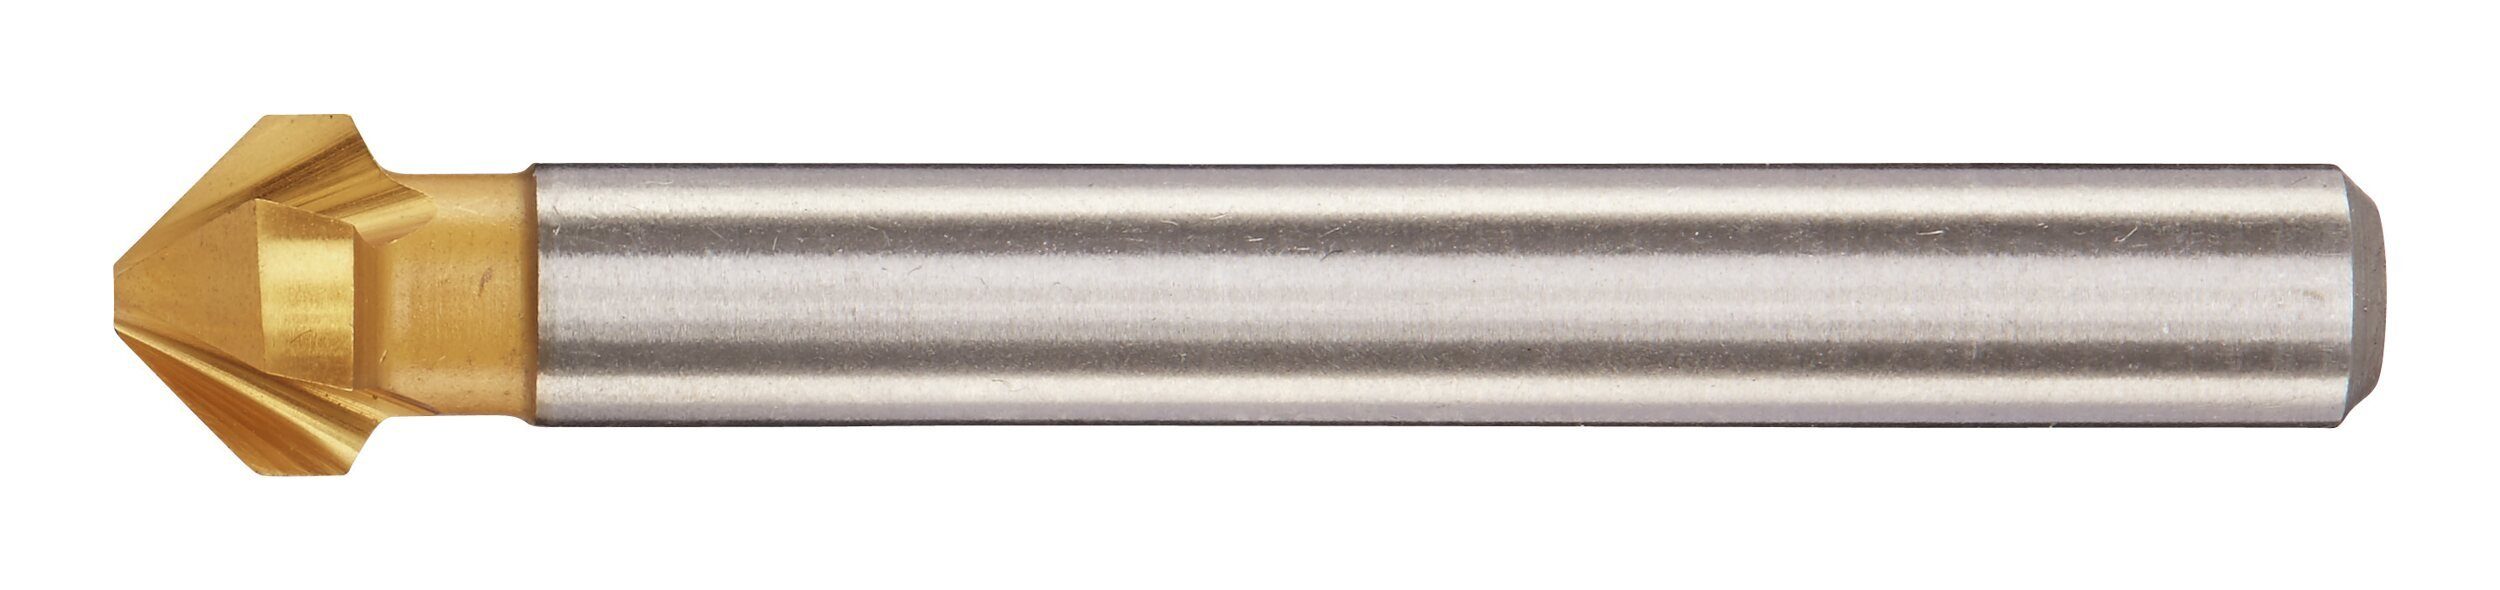 Kegelsenker Metallbohrer, 20,5 fortis TiN mm 90G D335C HSS